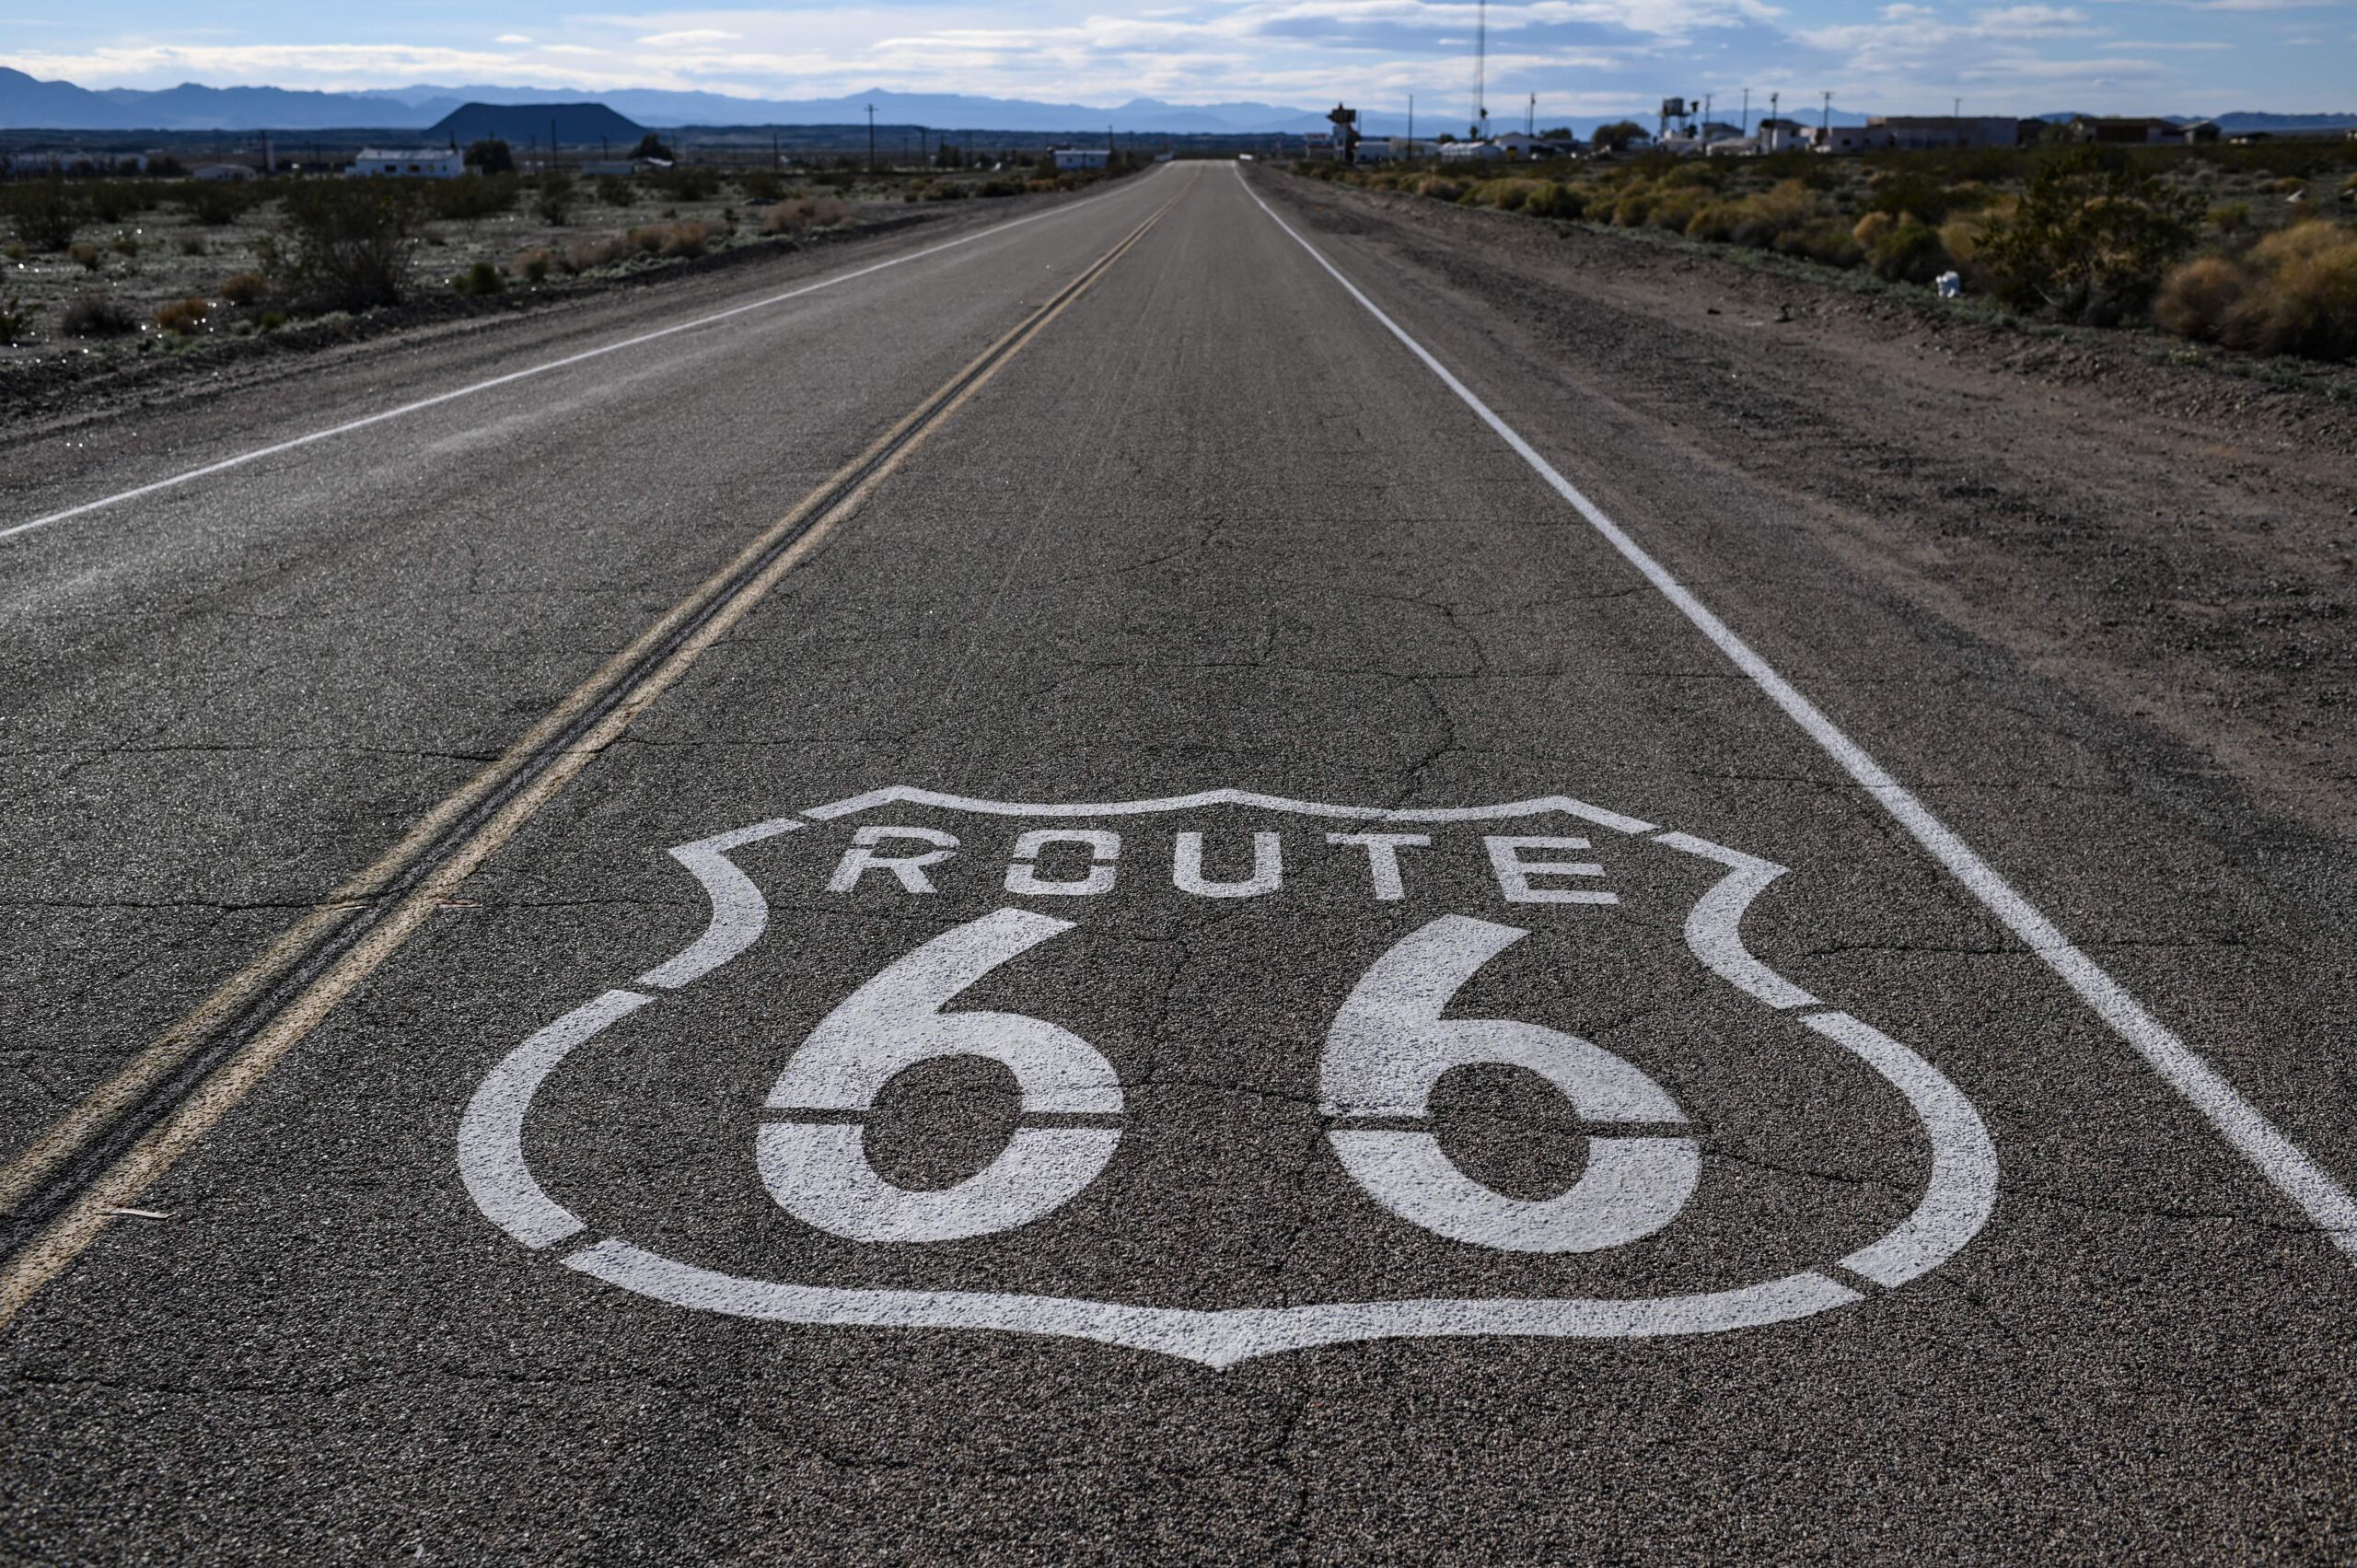 "Route 66", geschilderd op het asfalt bij Amboy in de Mojave-woestijn in Californië.